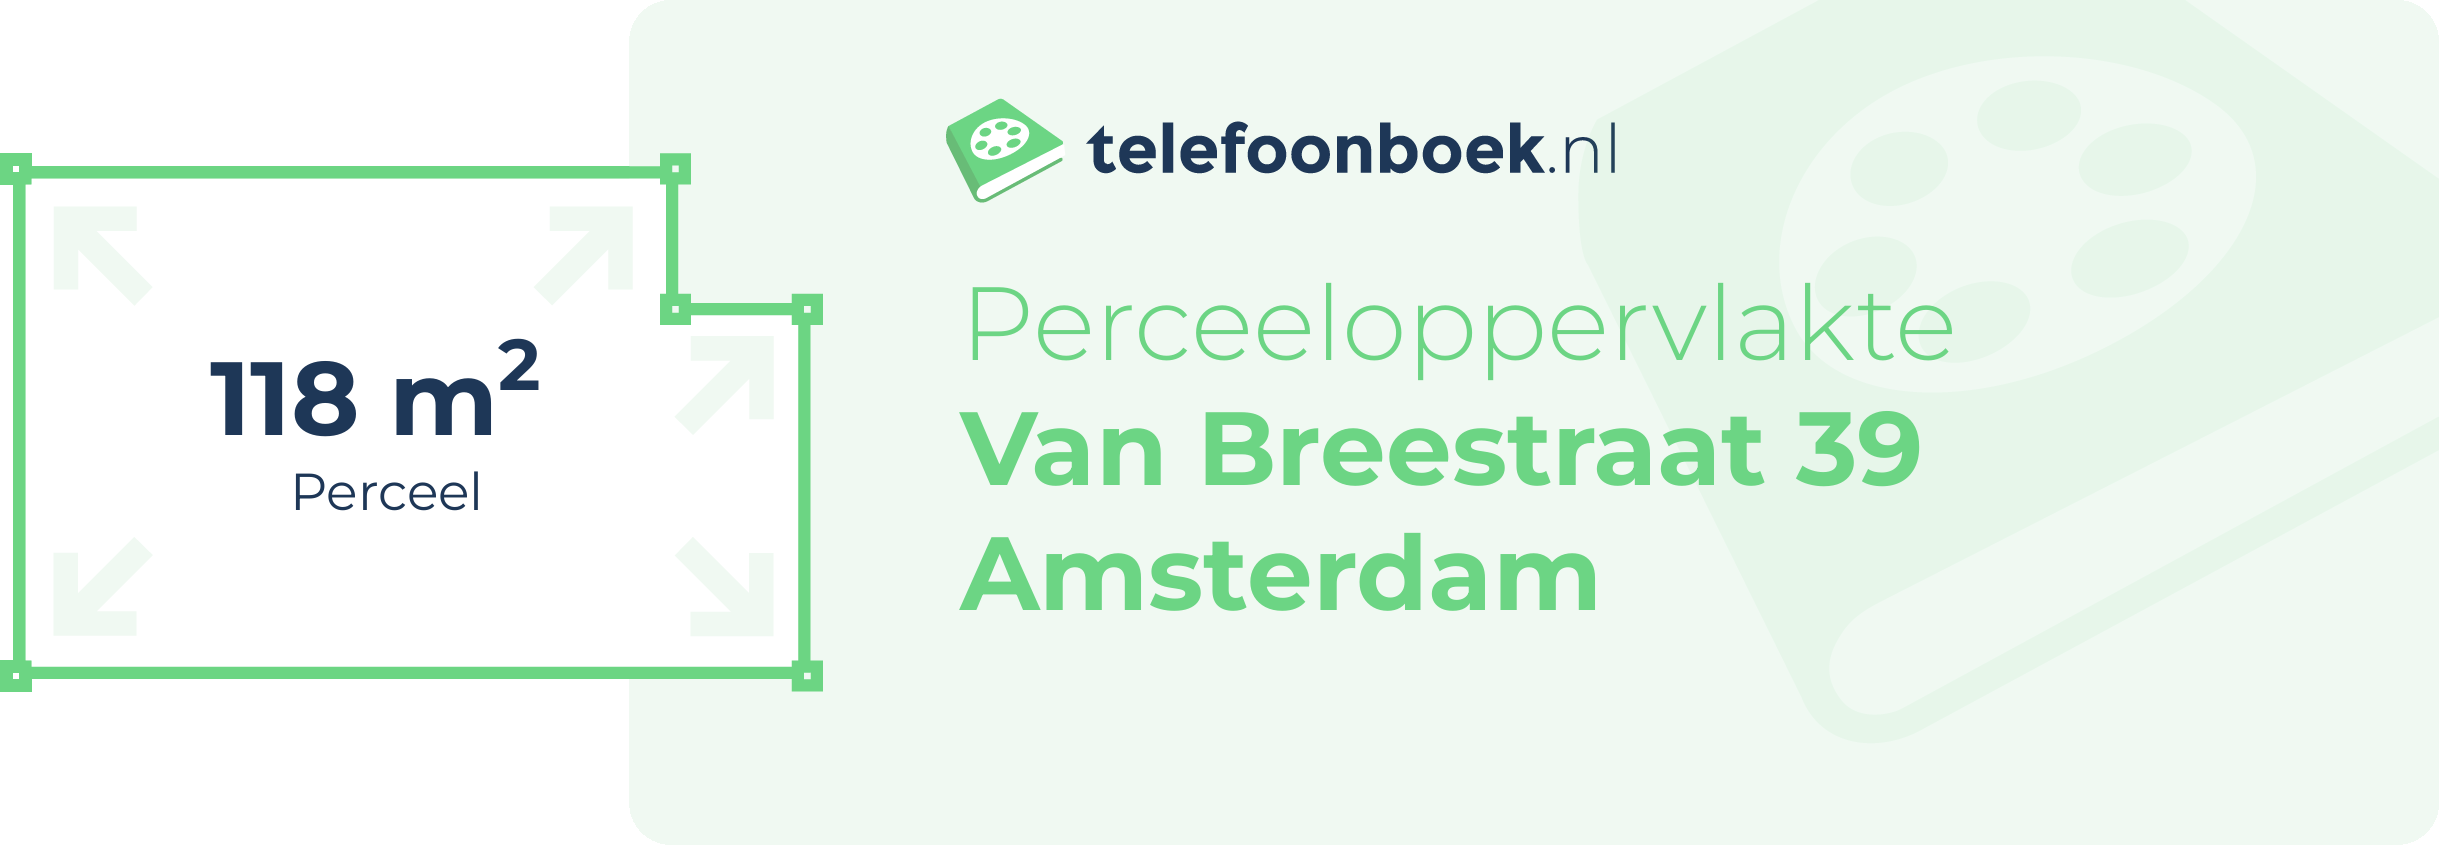 Perceeloppervlakte Van Breestraat 39 Amsterdam